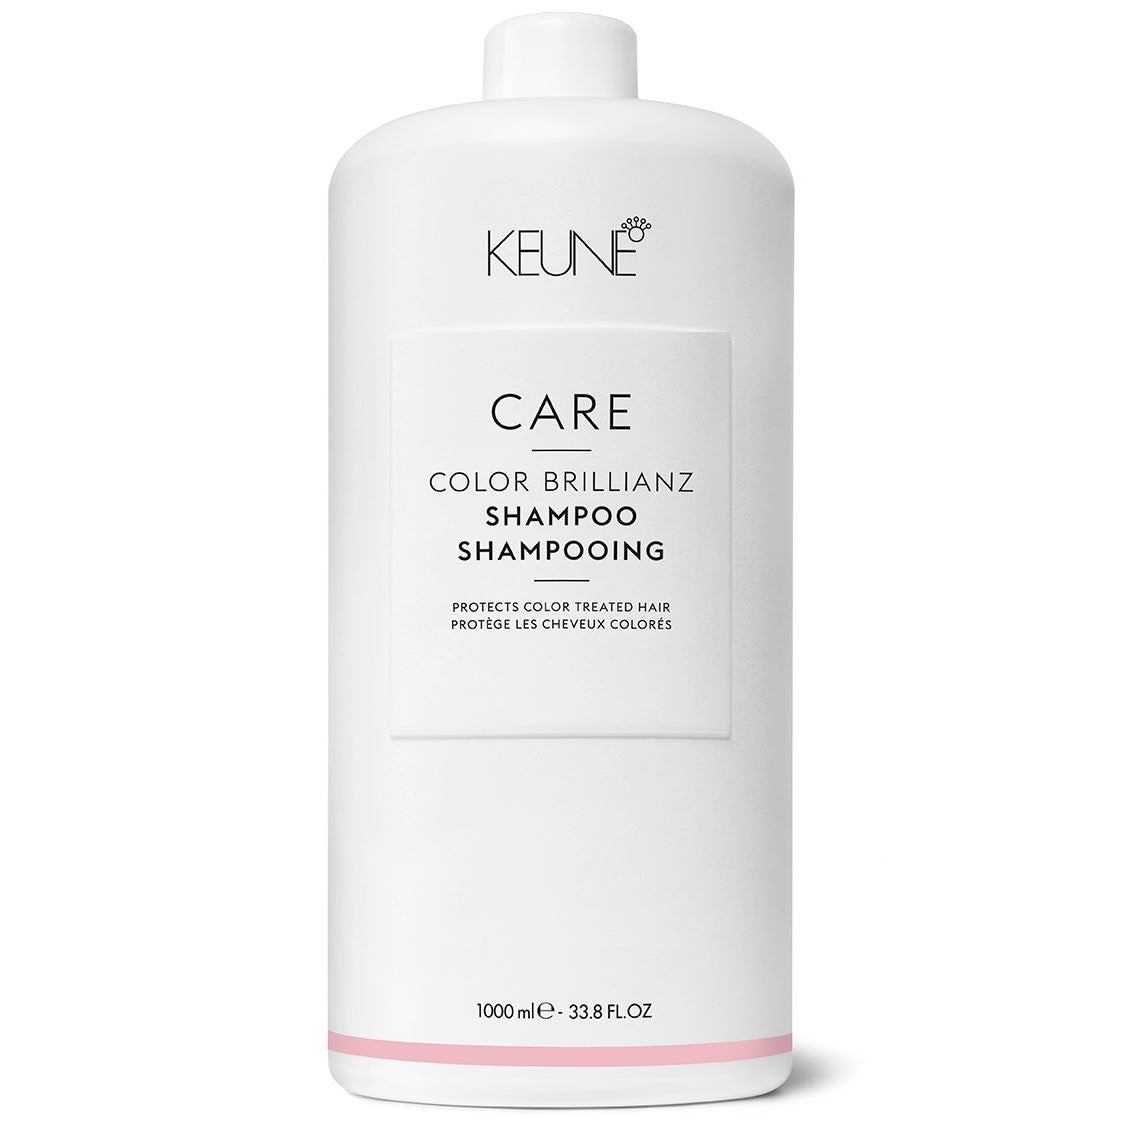 szampon keune color care